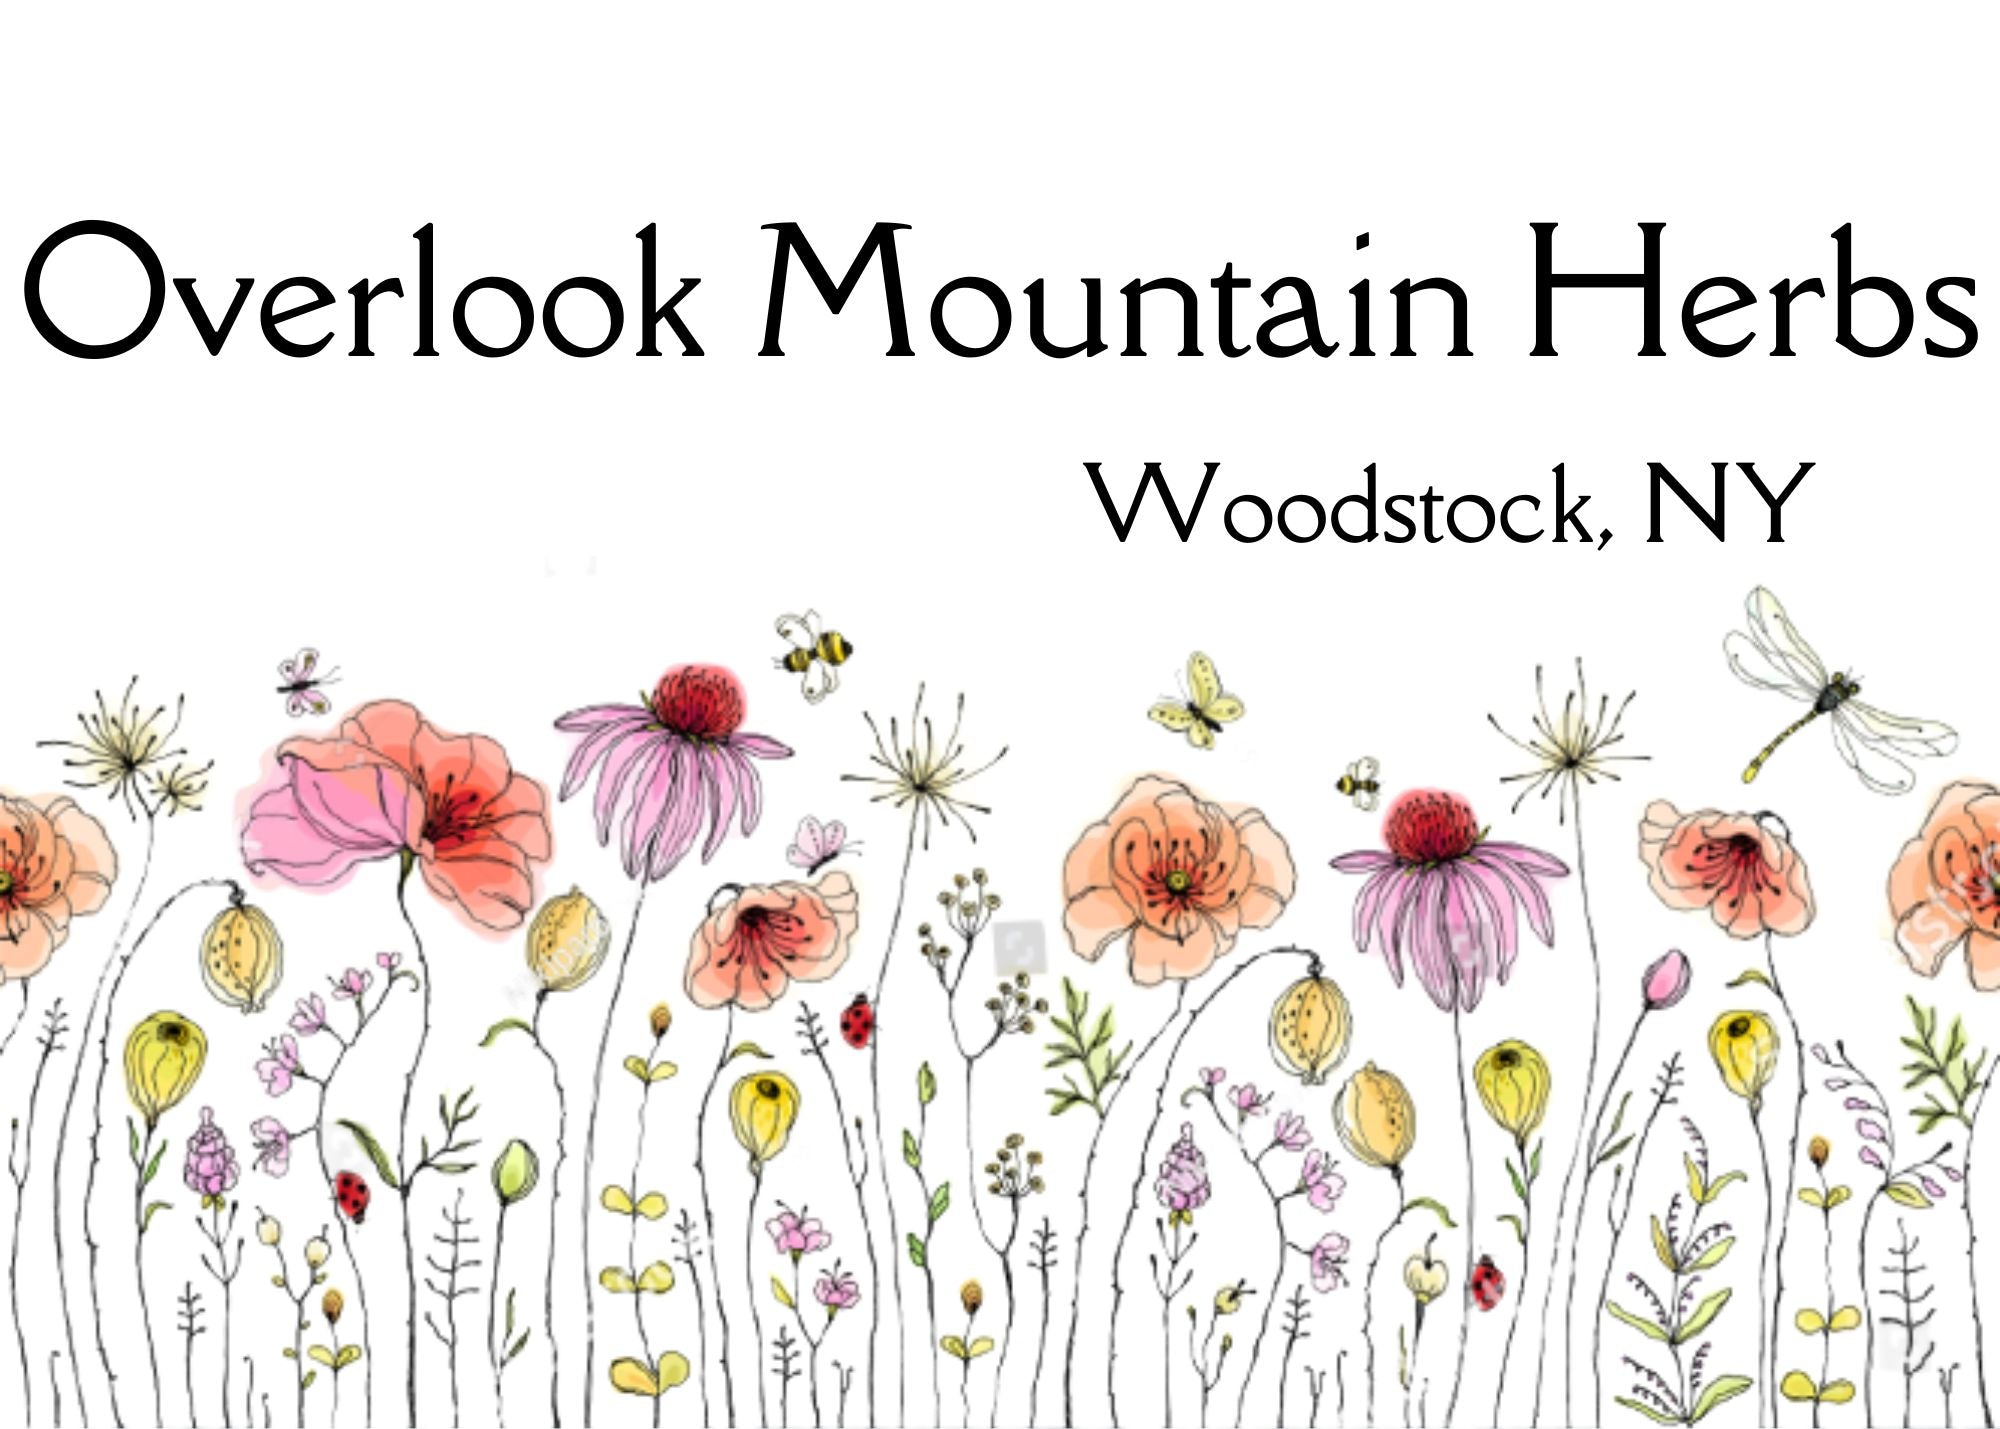 Overlook Mountain Herbs